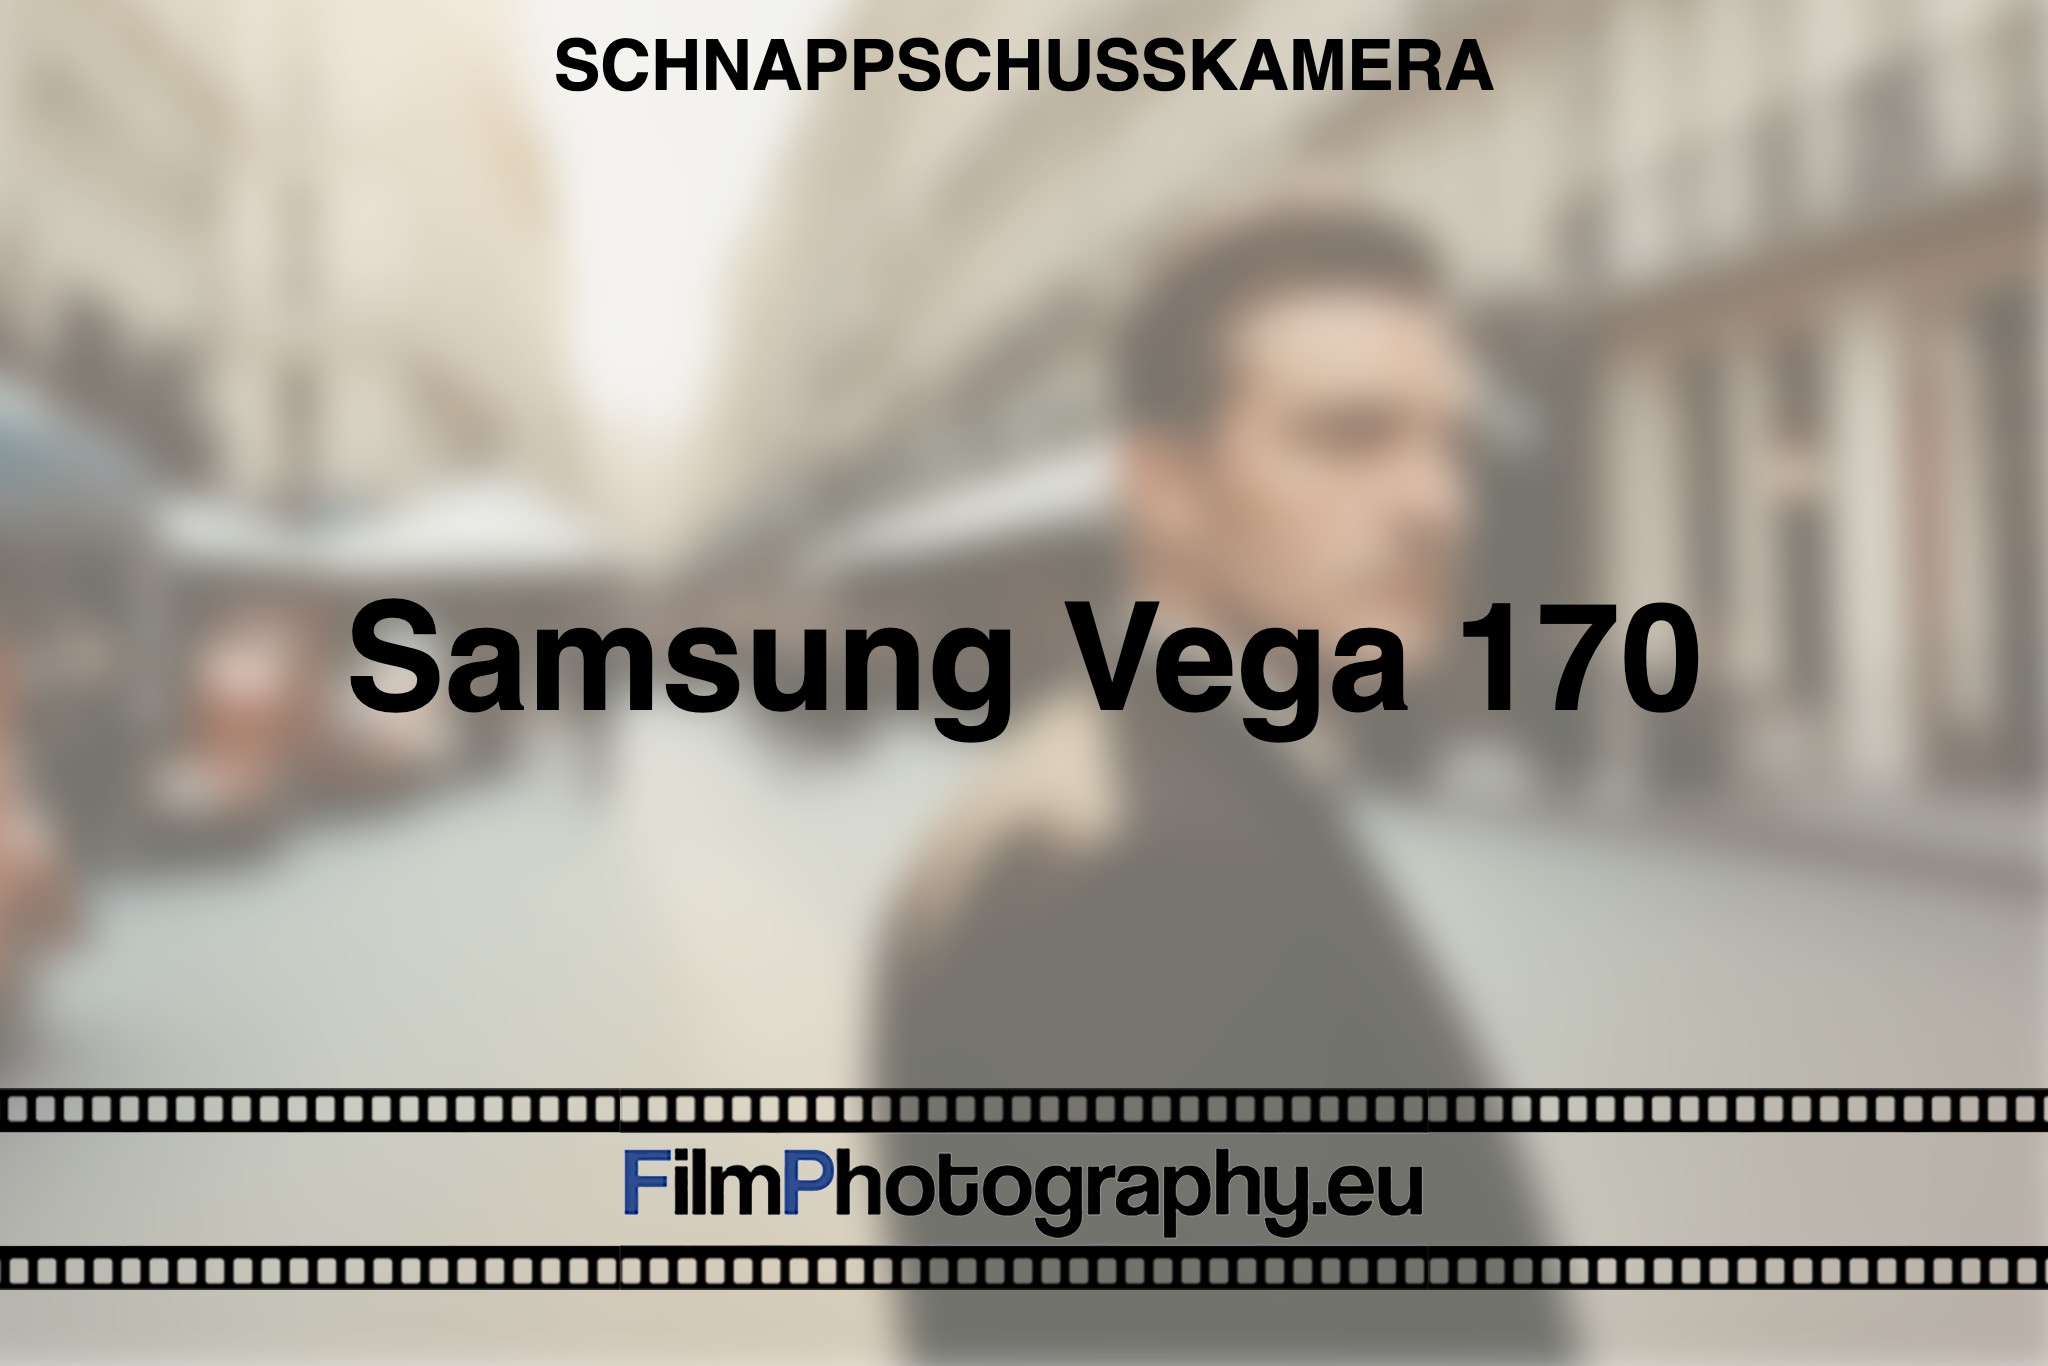 samsung-vega-170-schnappschusskamera-bnv